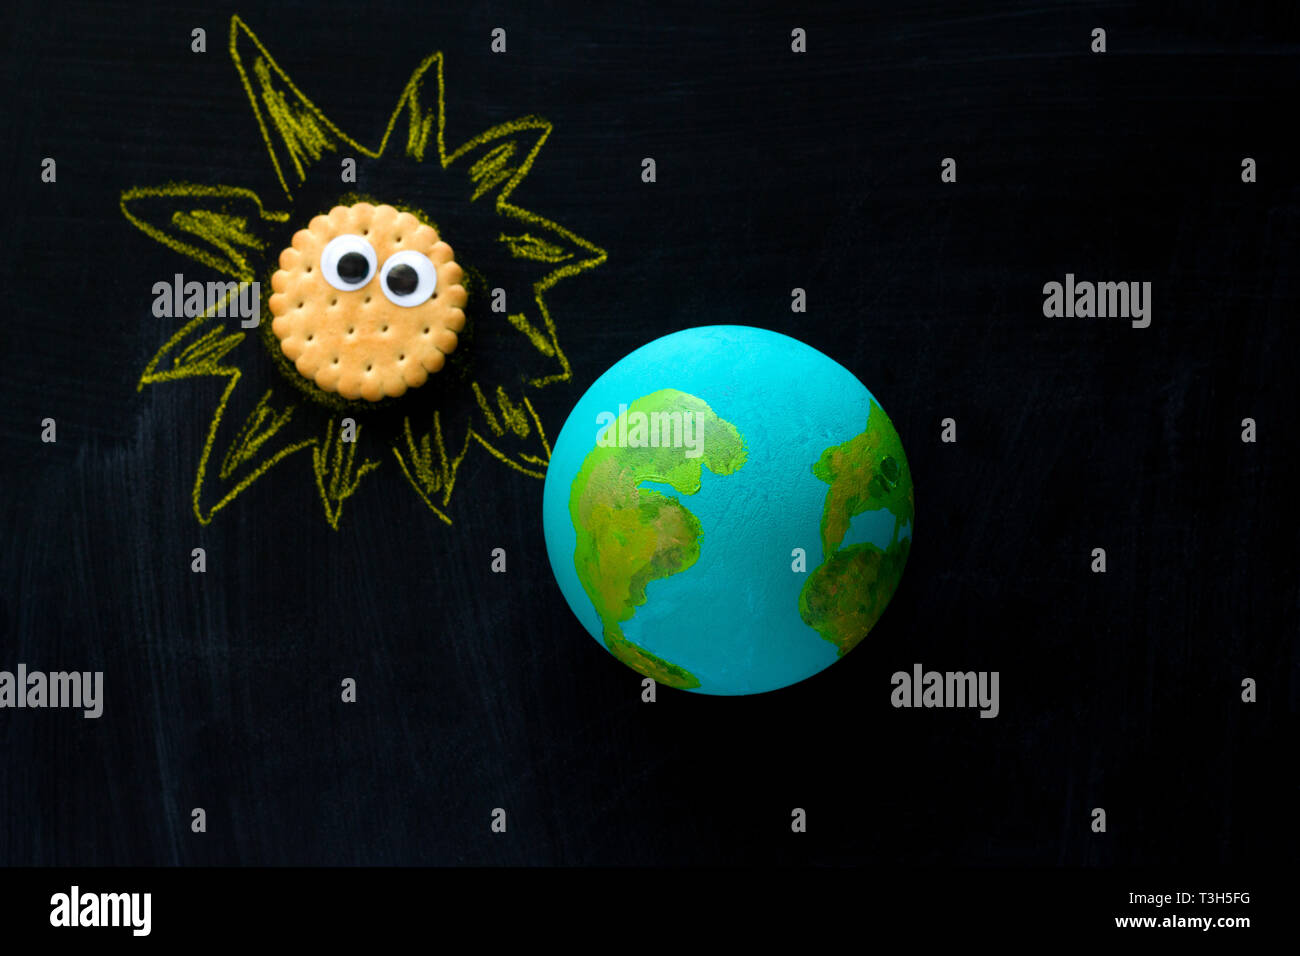 Vista superior del modelo artesanal del planeta Tierra y cookie gracioso Sunwith googly ojos en la pizarra , el espacio y la astronomía concepto Foto de stock